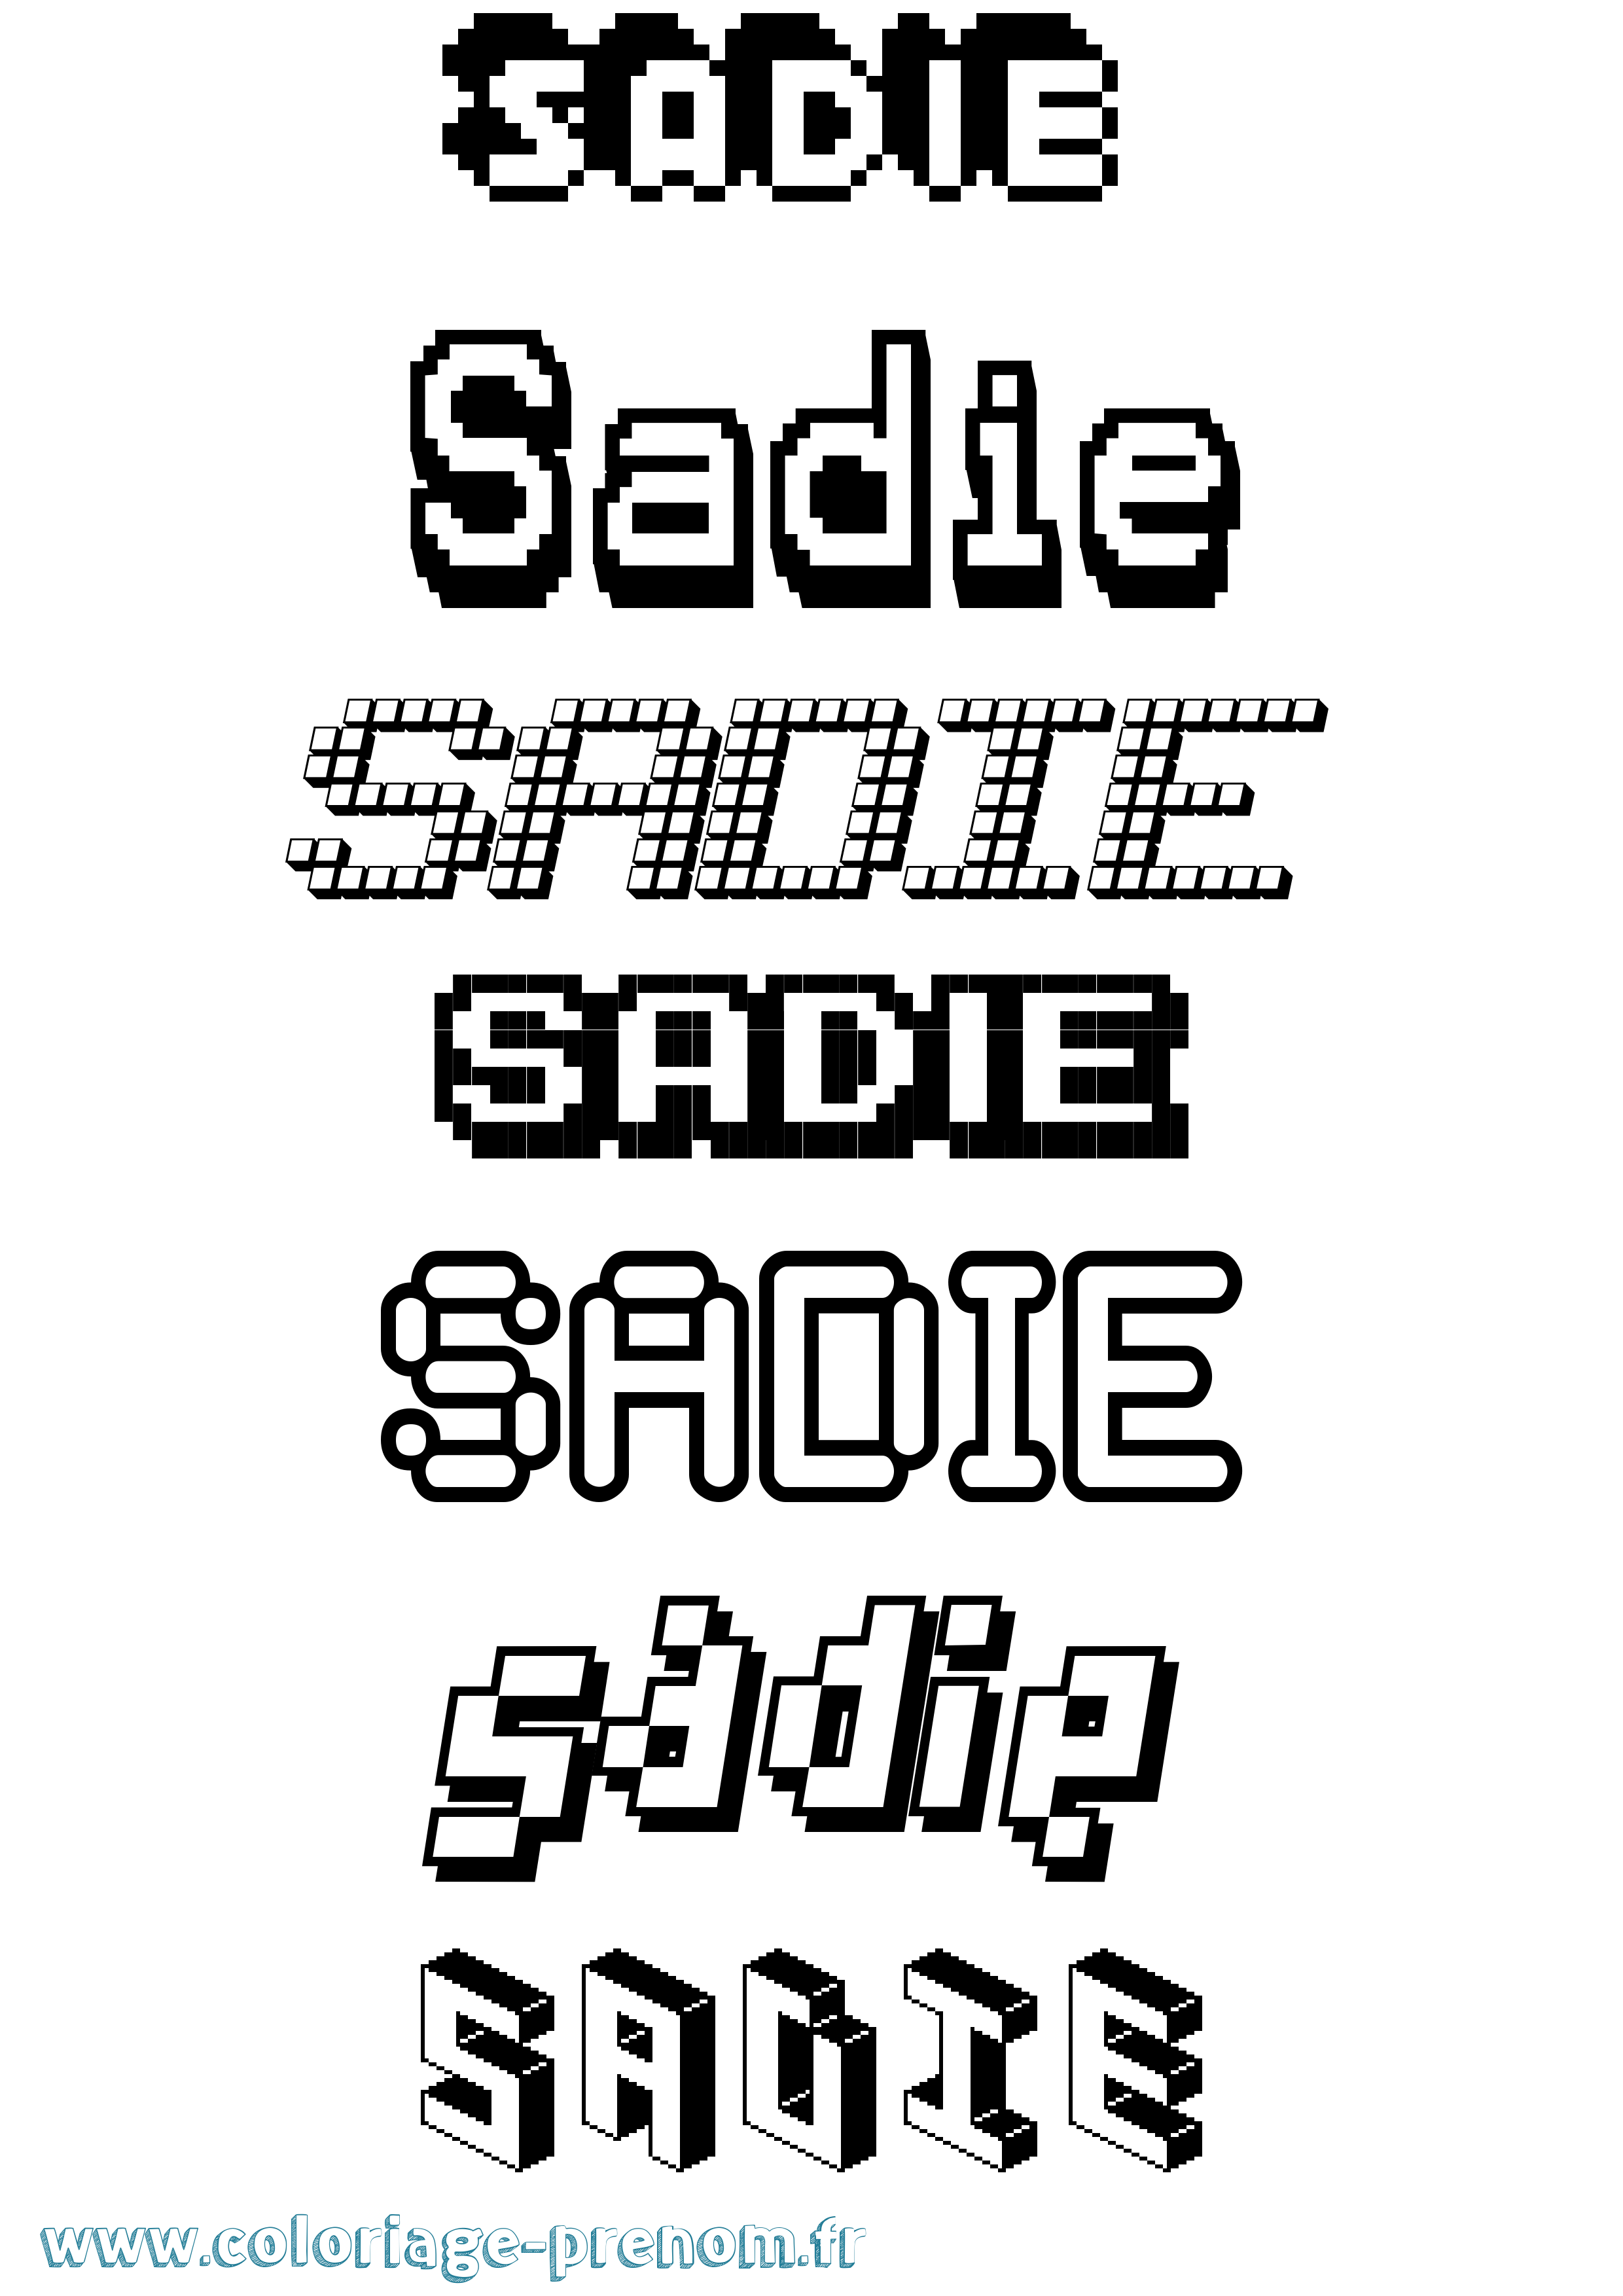 Coloriage prénom Sadie Pixel